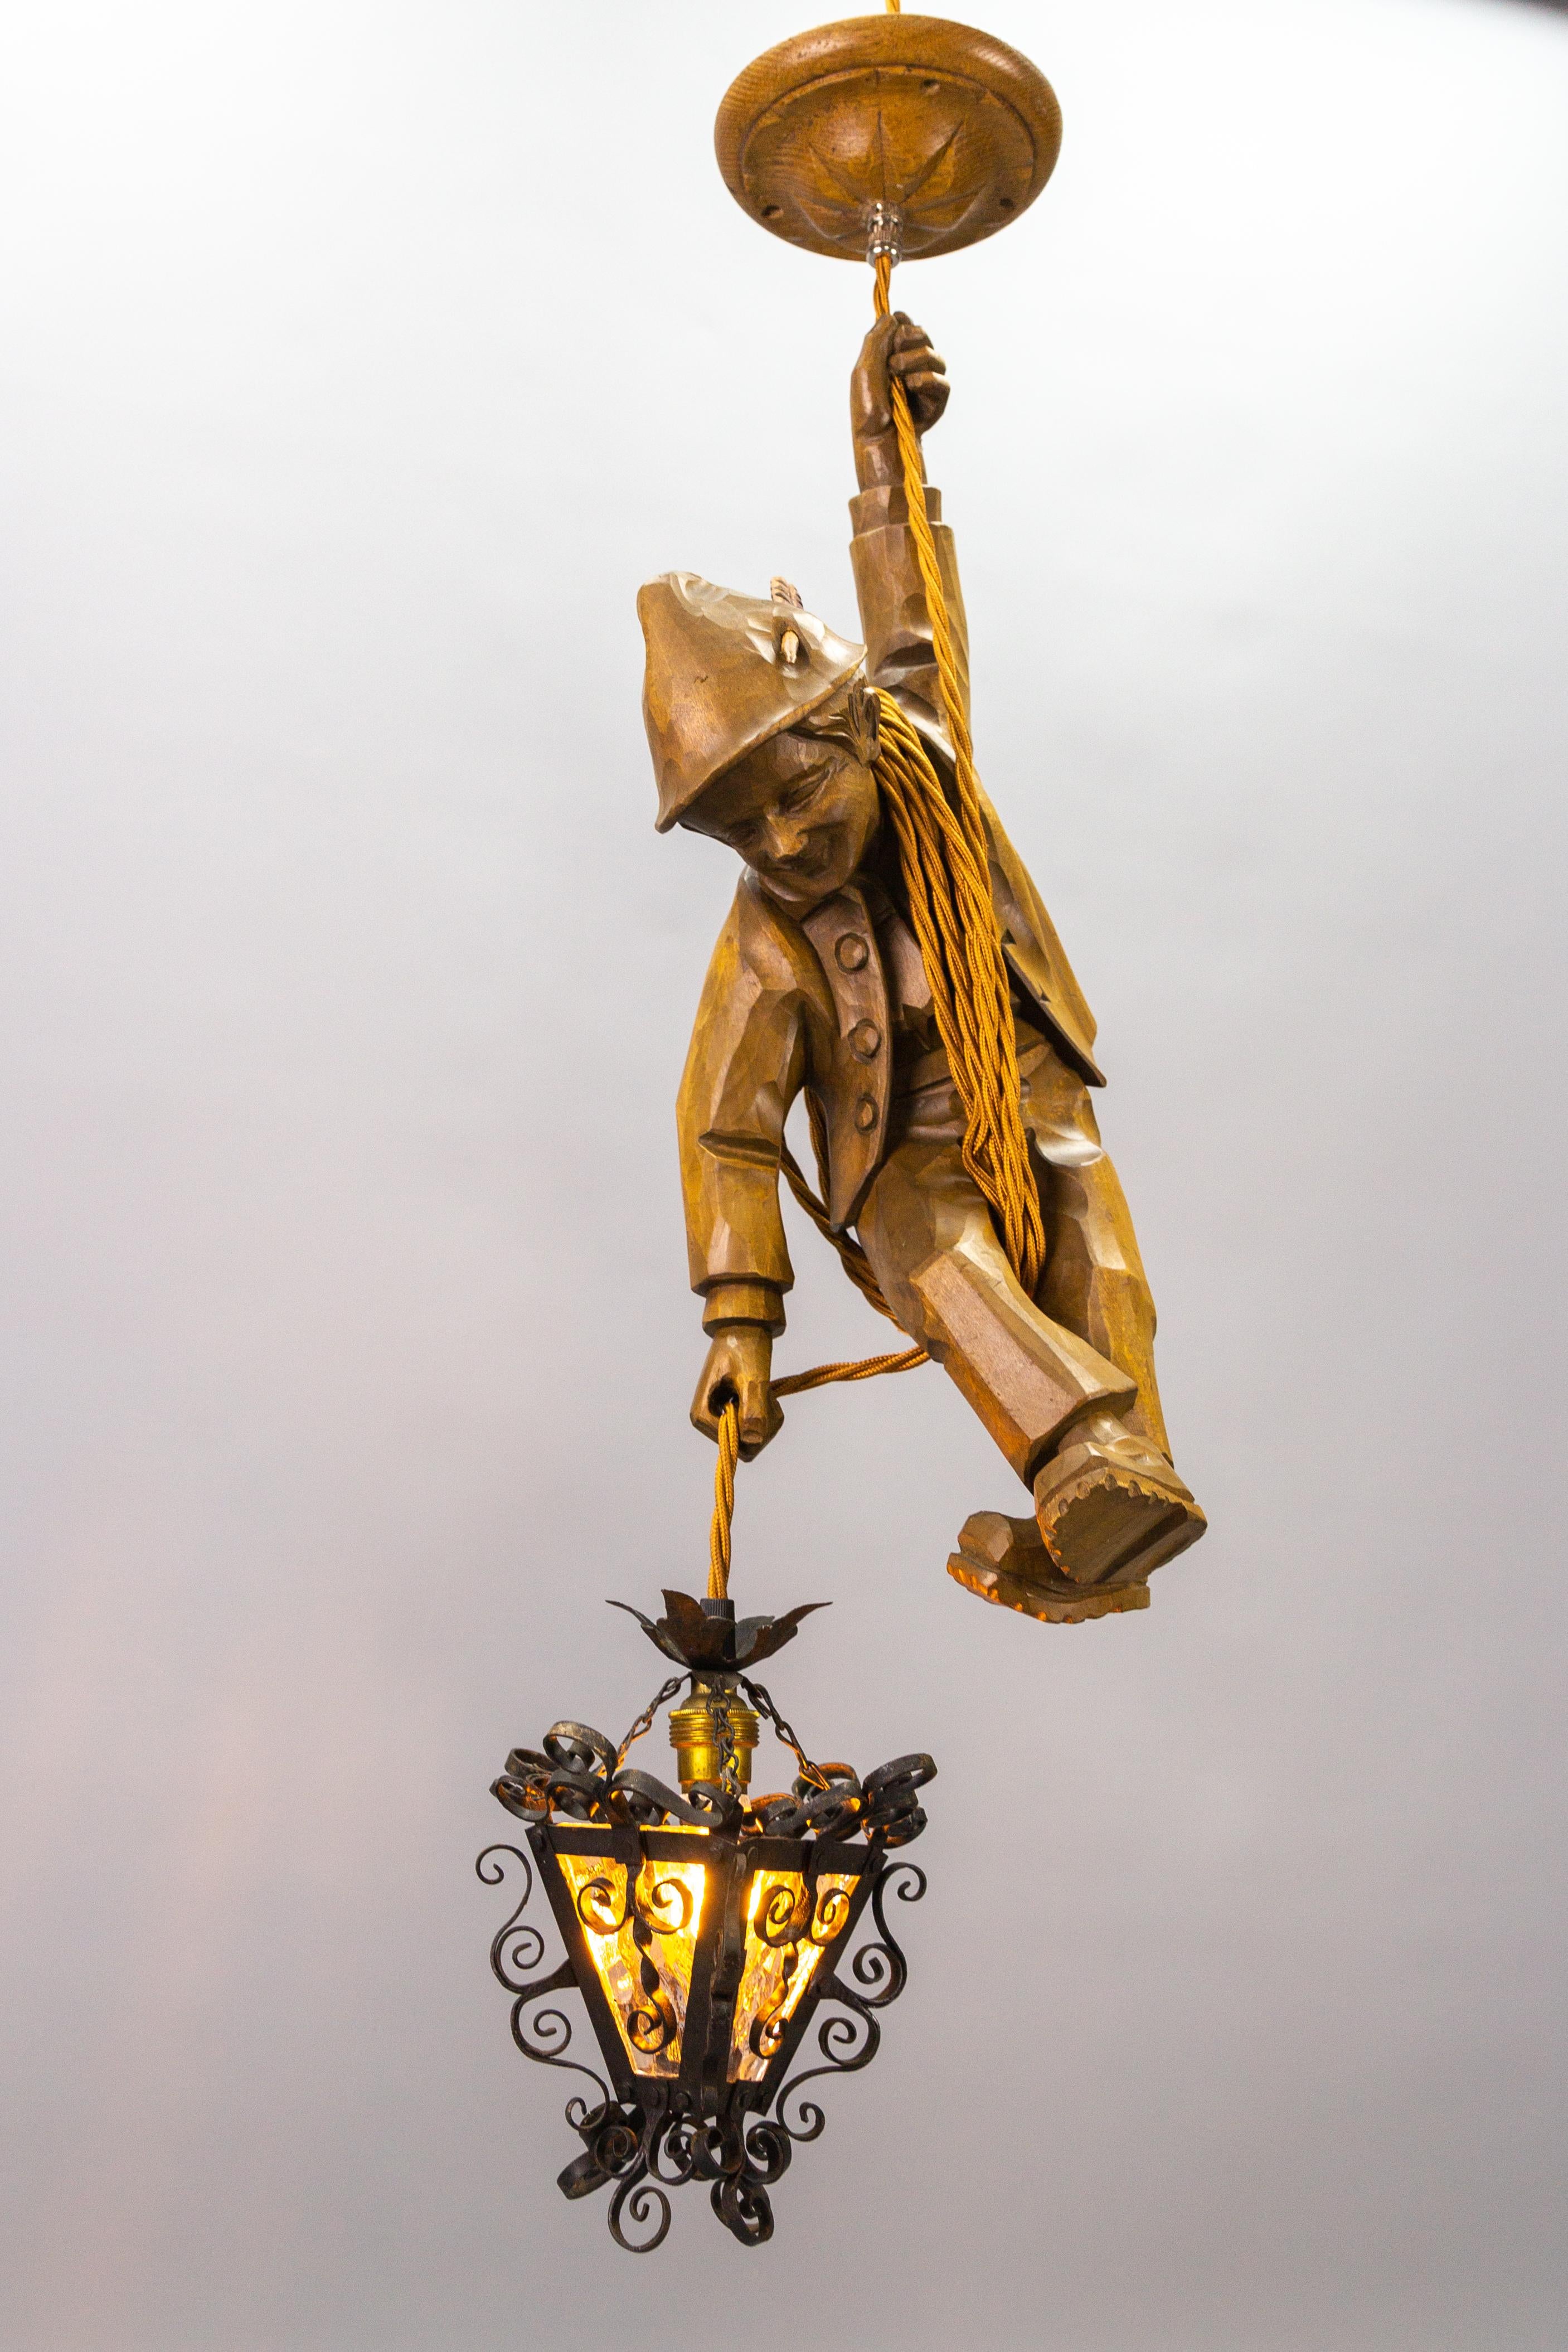 Cette adorable lampe suspendue figurative allemande datant des années 1950 présente une figure sculptée à la main d'un alpiniste souriant. L'alpiniste en bois de tilleul sculpté s'accroche à une corde et tient dans une main une lanterne en métal